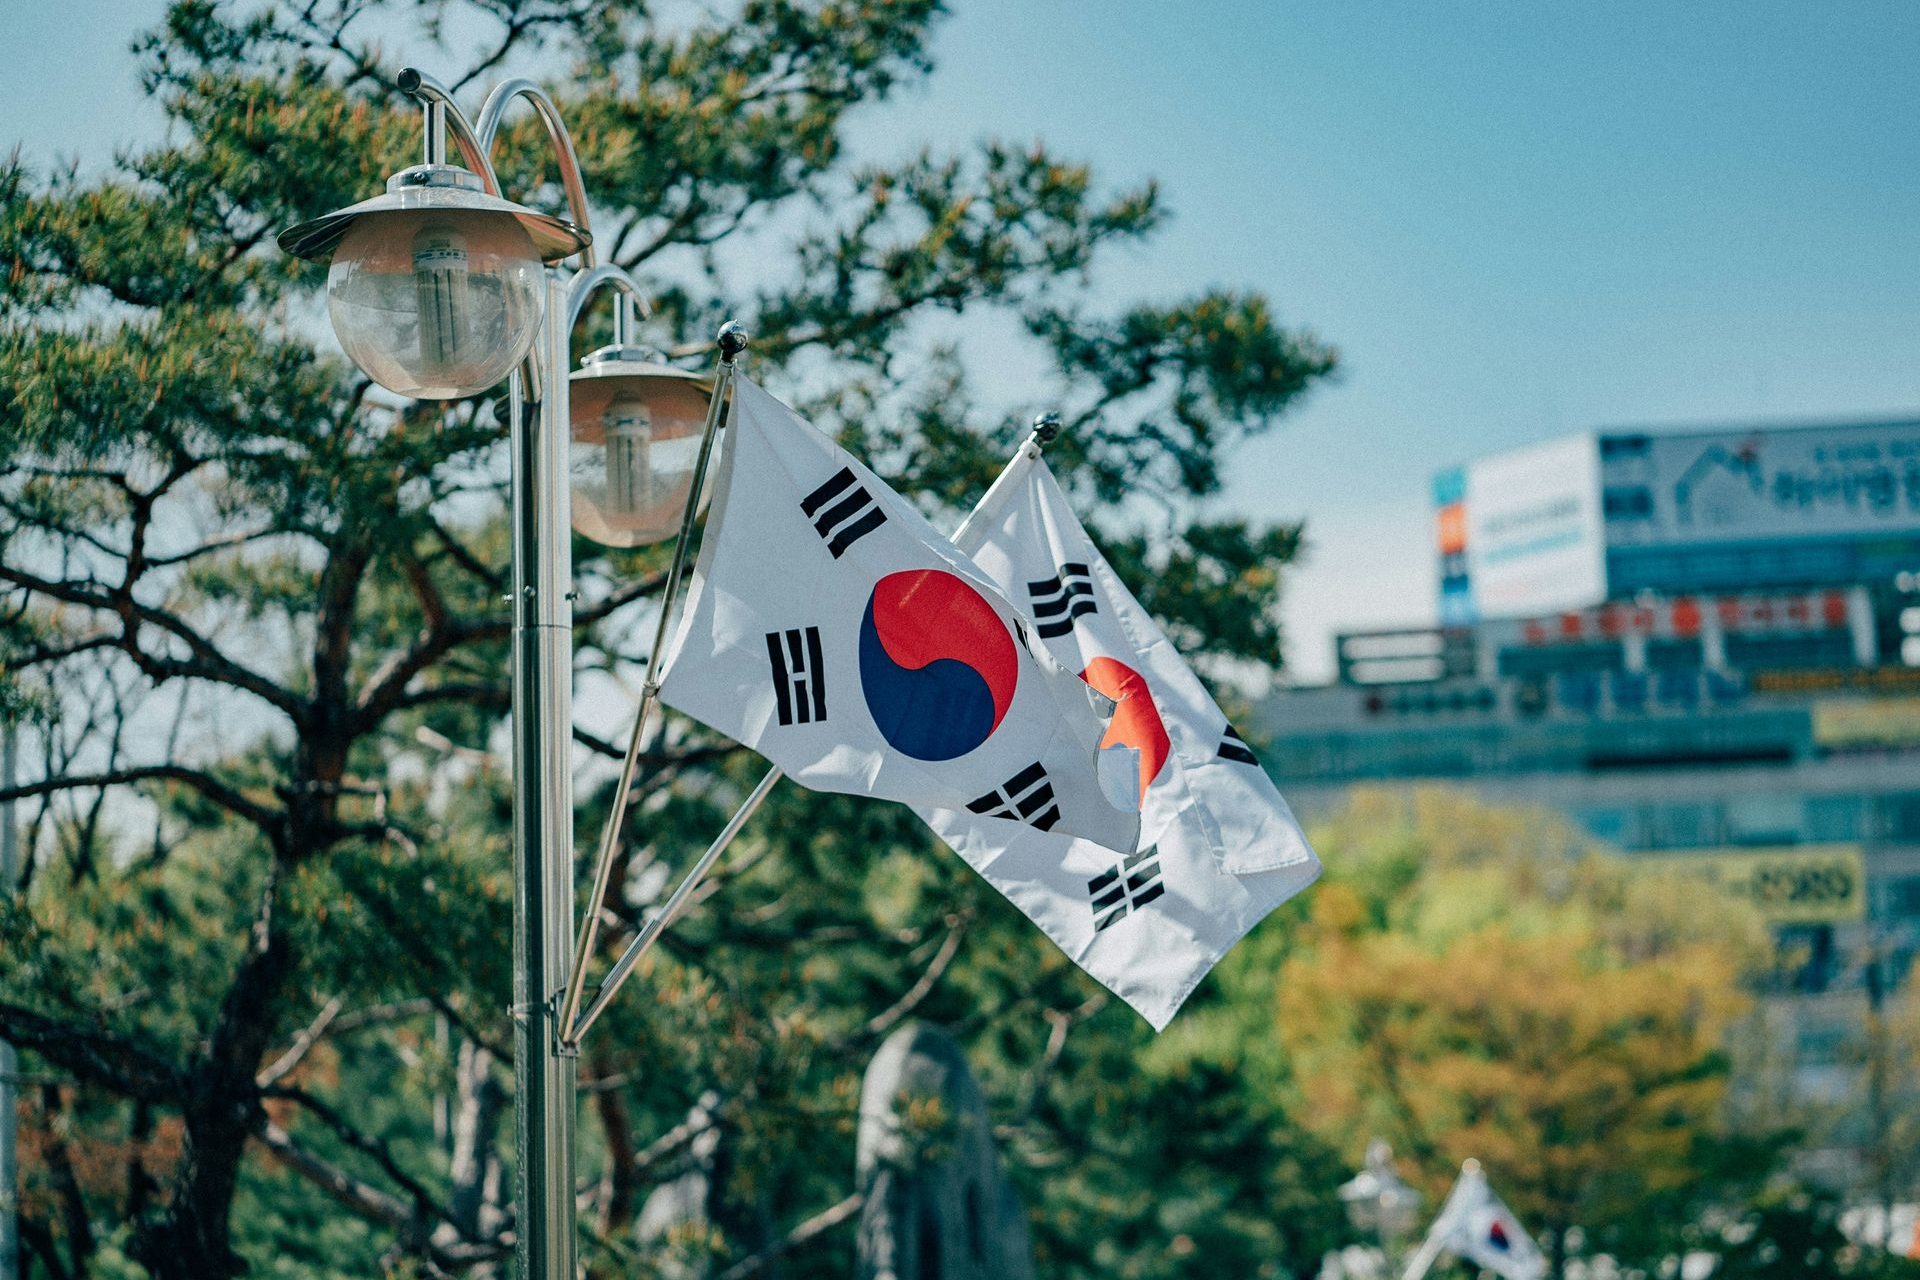 South Korea: 84.14 years